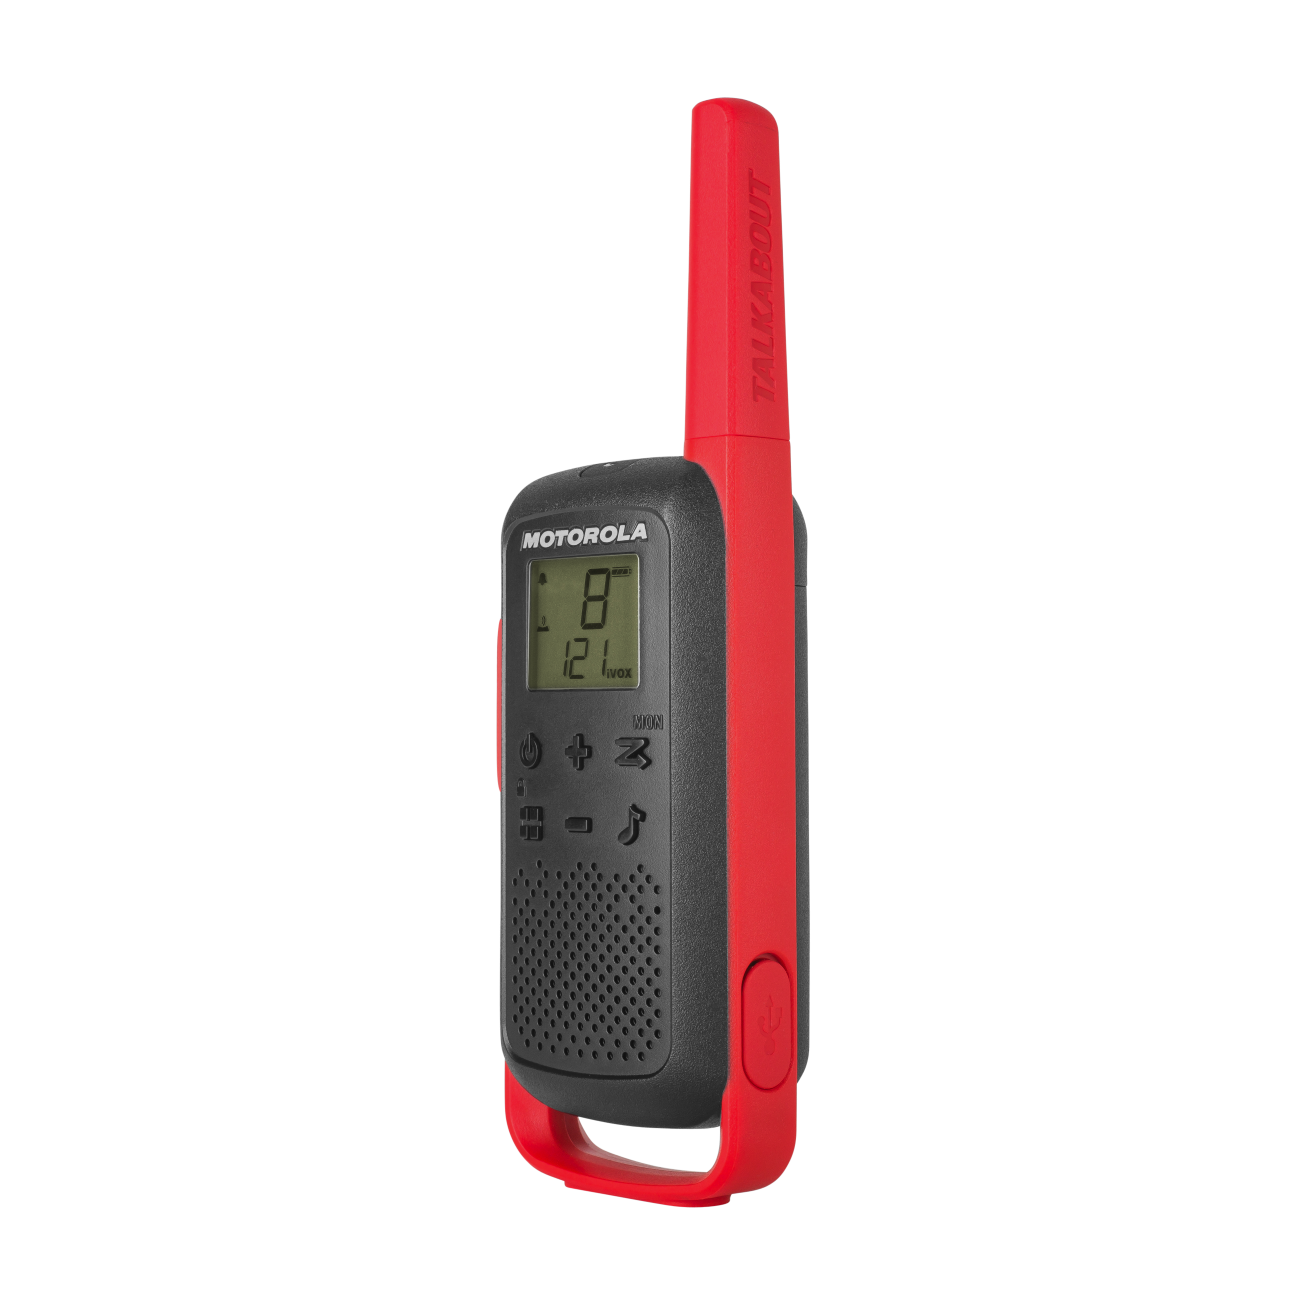 T210 red walkie talkie left side